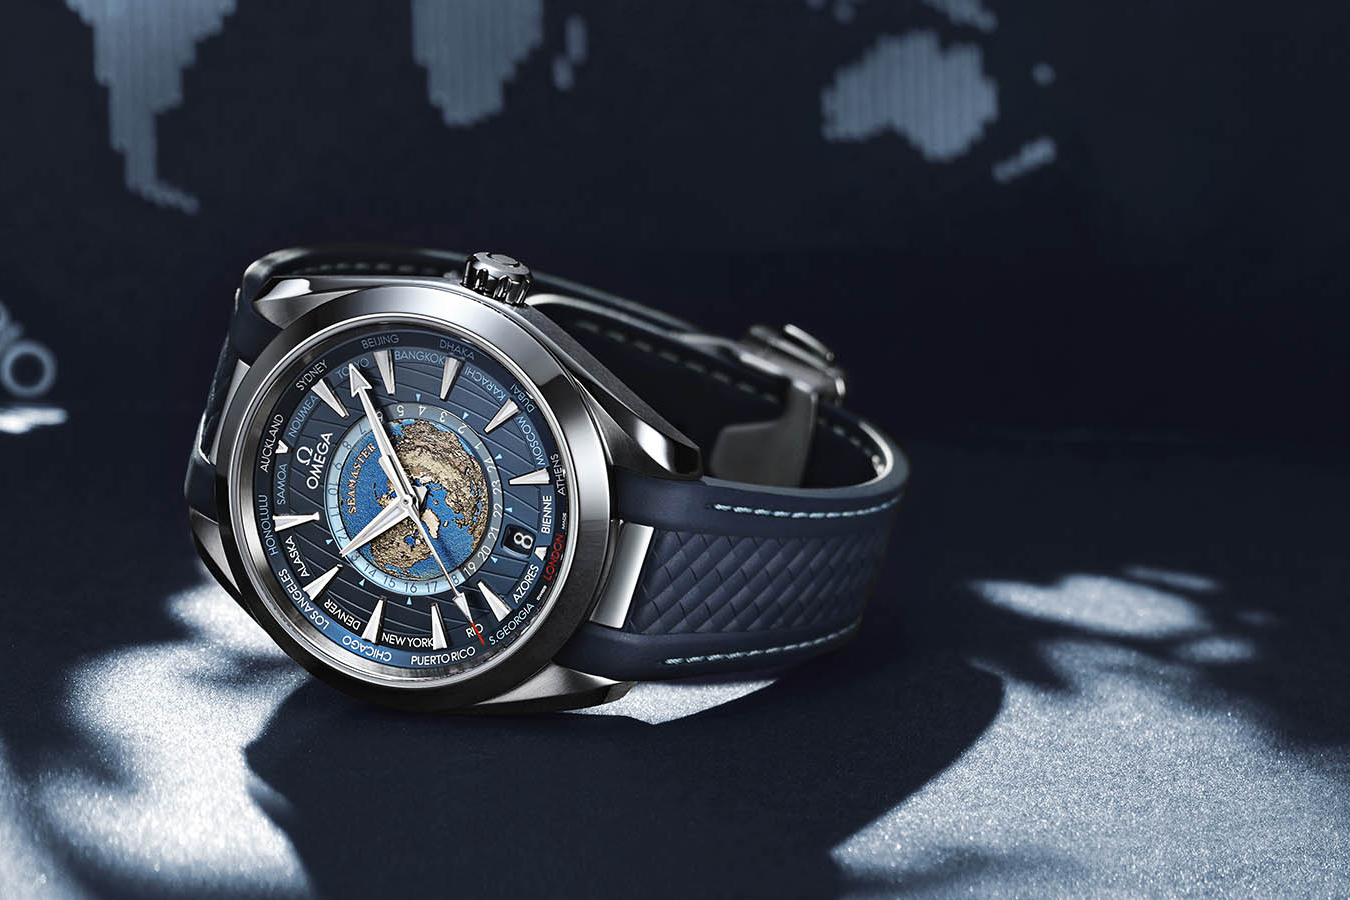 Seamaster Aqua Terra 150M là một trong những mẫu đồng hồ được ưa chuộng nhất của Omega. Hình ảnh này sẽ khiến bạn yêu thích Seamaster Aqua Terra 150M bởi sự tinh tế và độc đáo của nó. Hãy cùng chiêm ngưỡng những chiếc Seamaster Aqua Terra 150M đẳng cấp qua hình ảnh này.